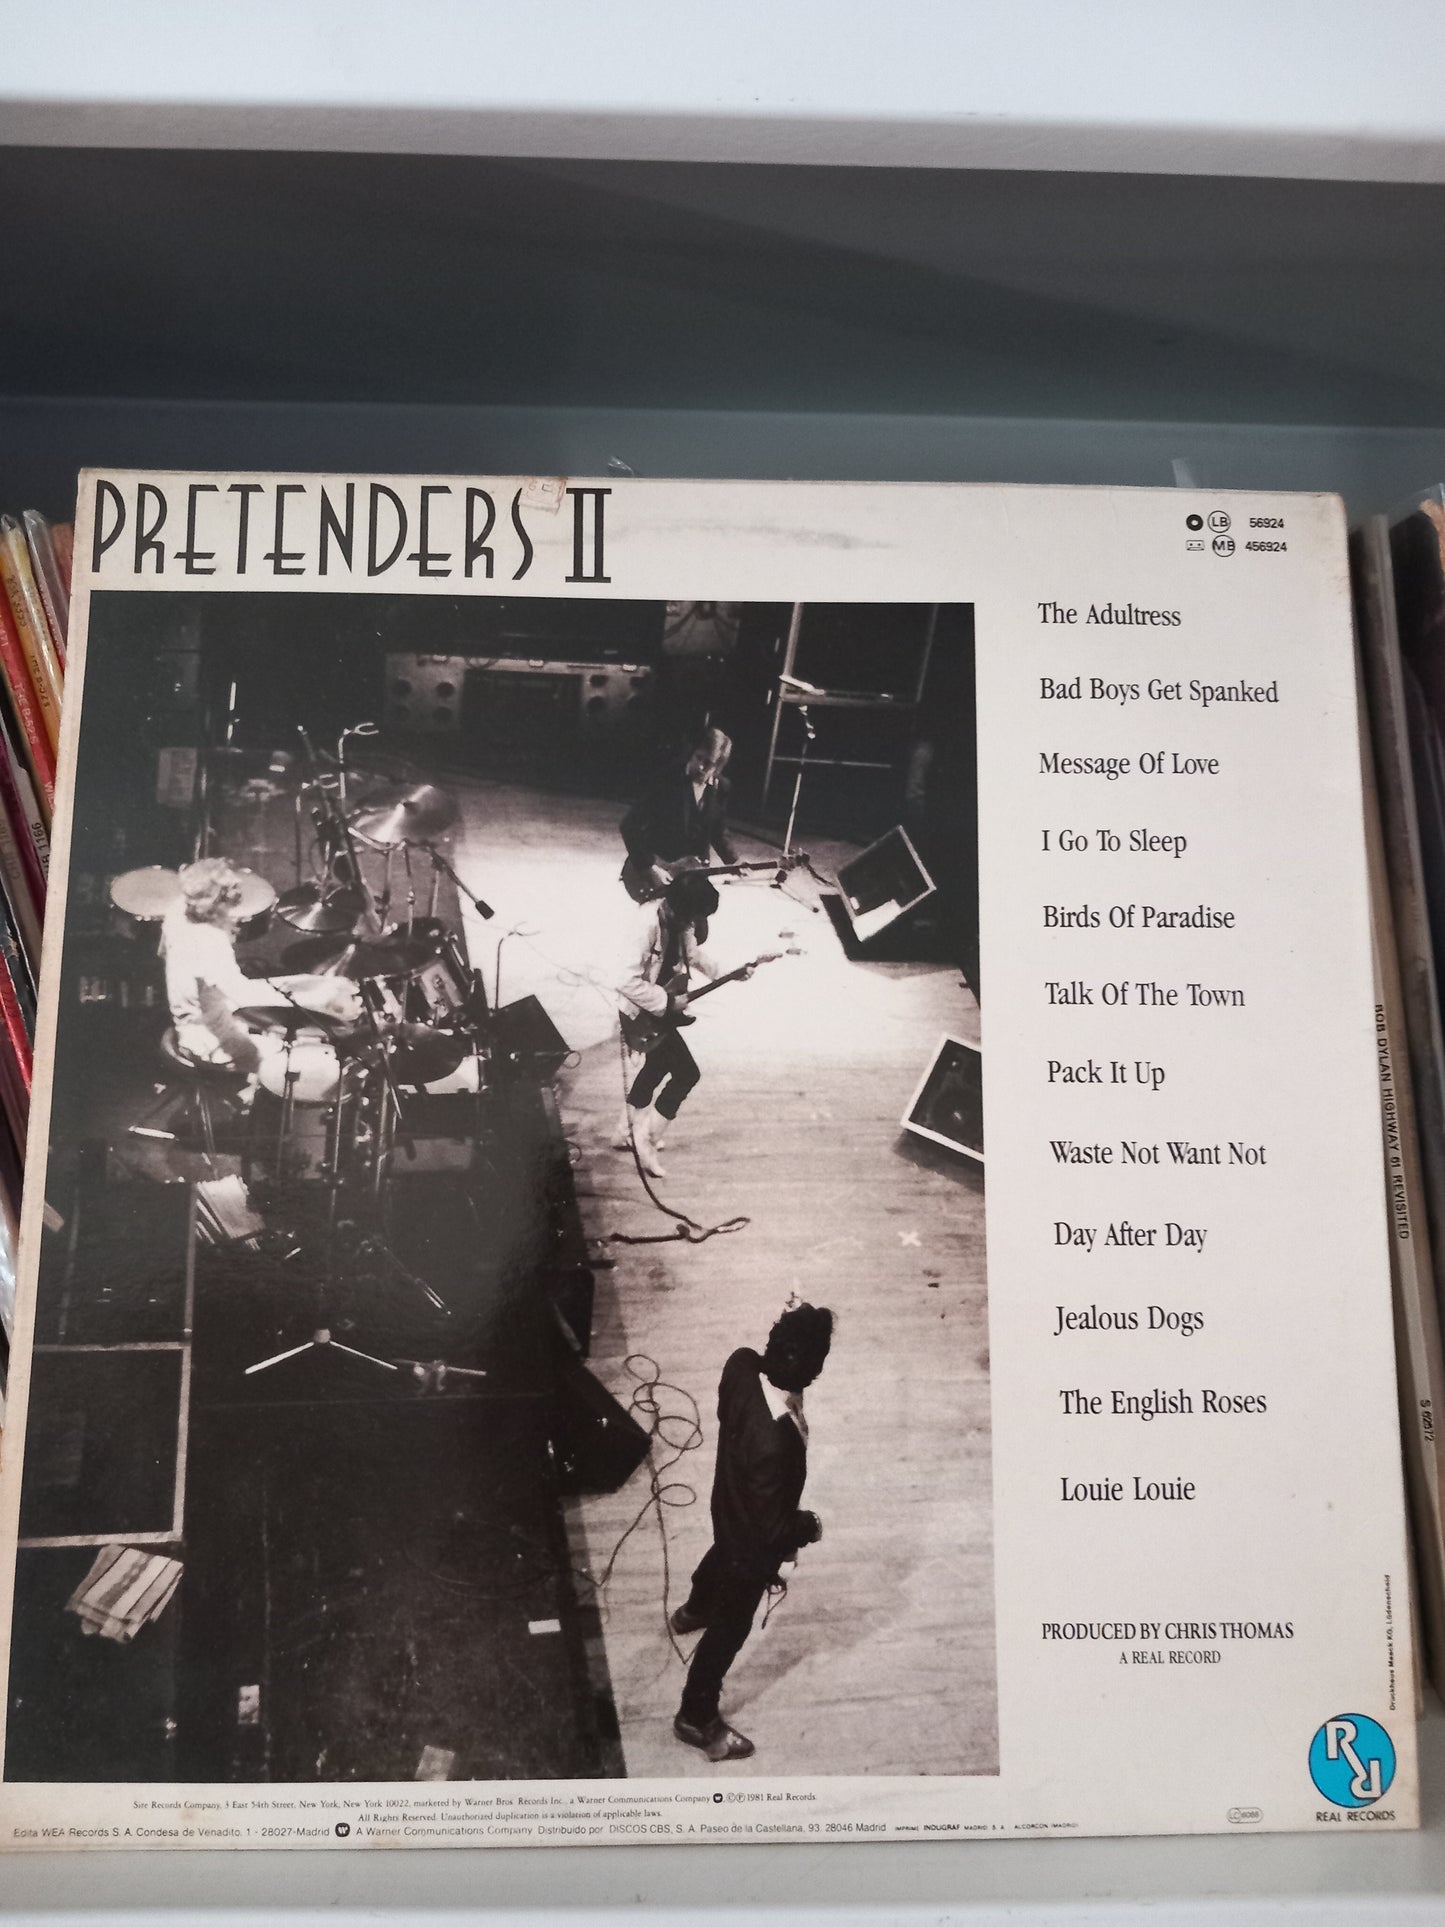 The Pretenders ‎– Pretenders II